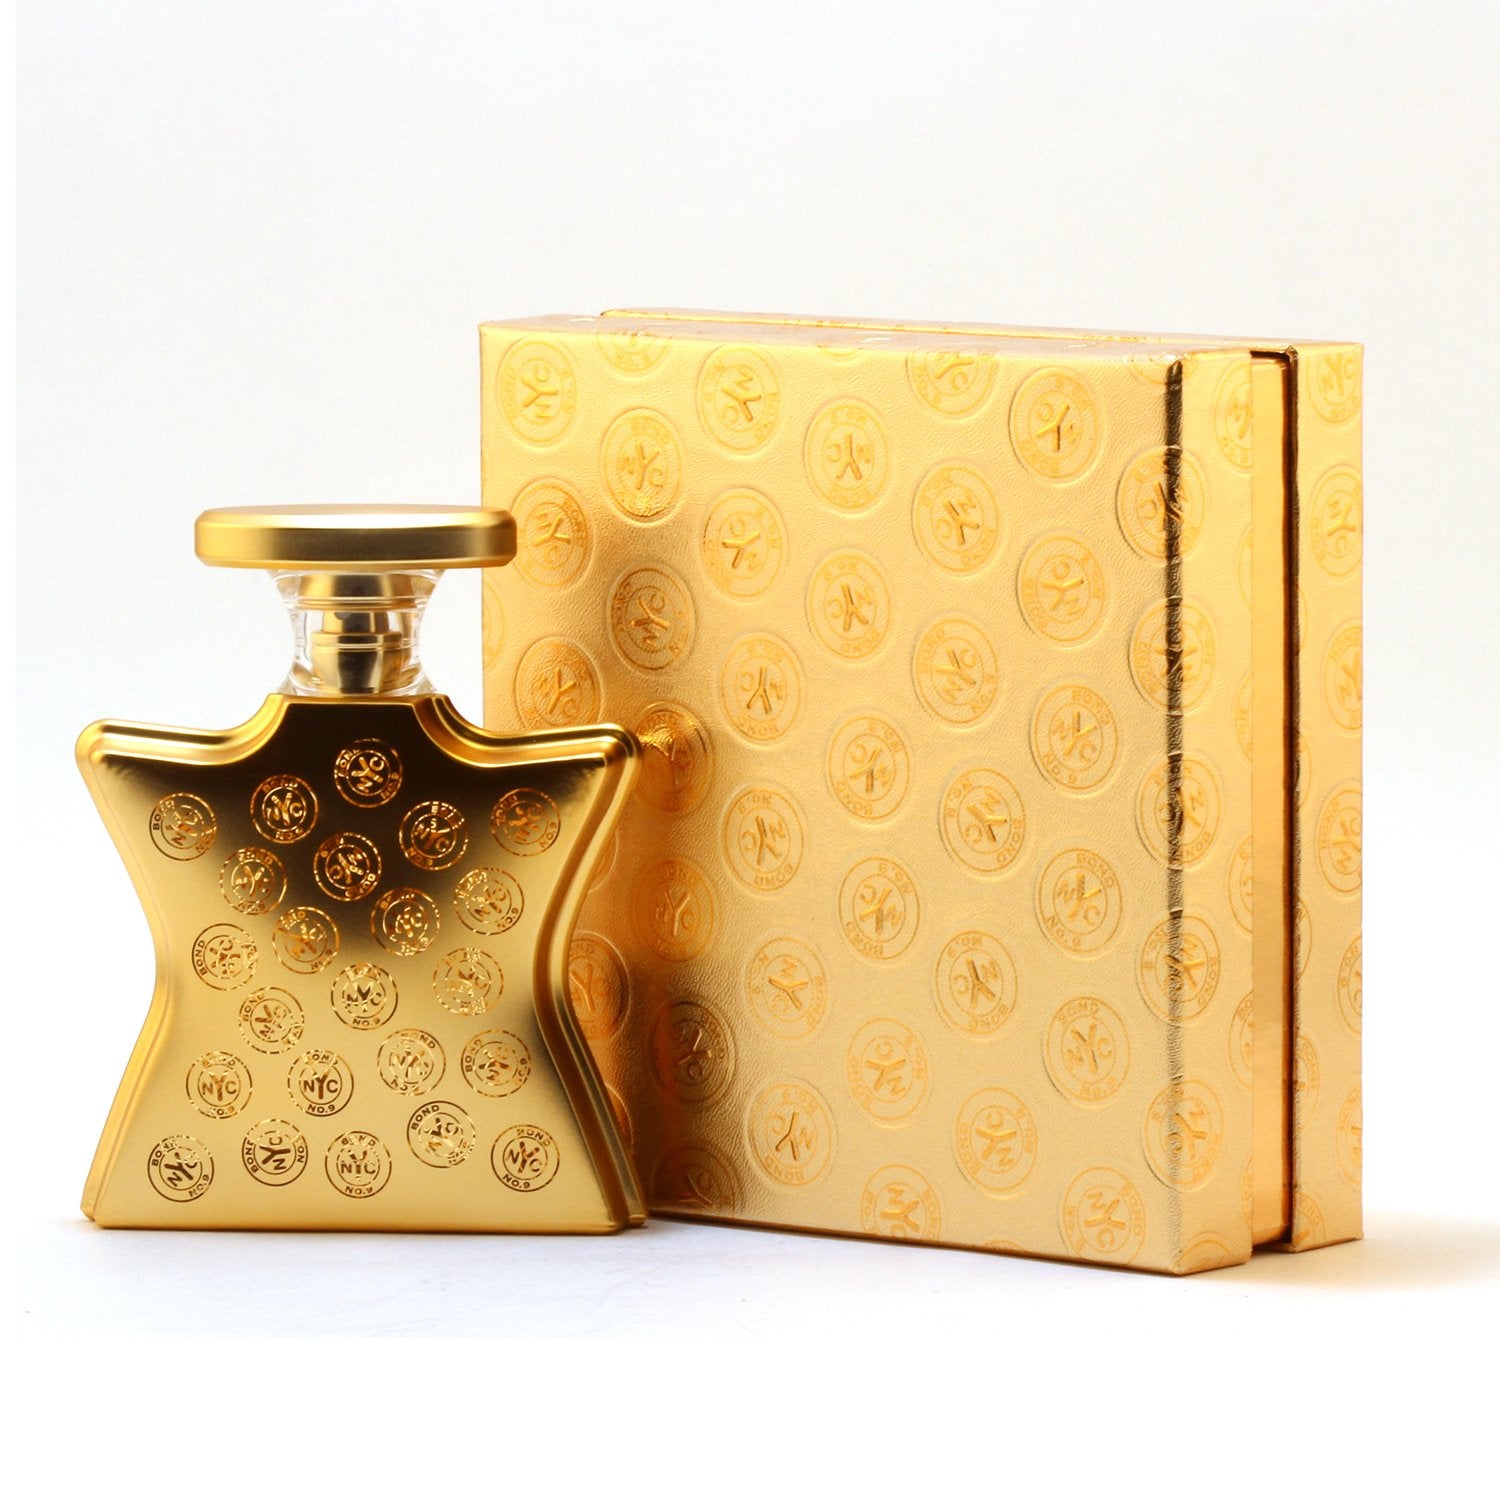 Perfume - BOND NO 9 SIGNATURE PERFUME FOR WOMEN - EAU DE PARFUM SPRAY, 3.4 OZ